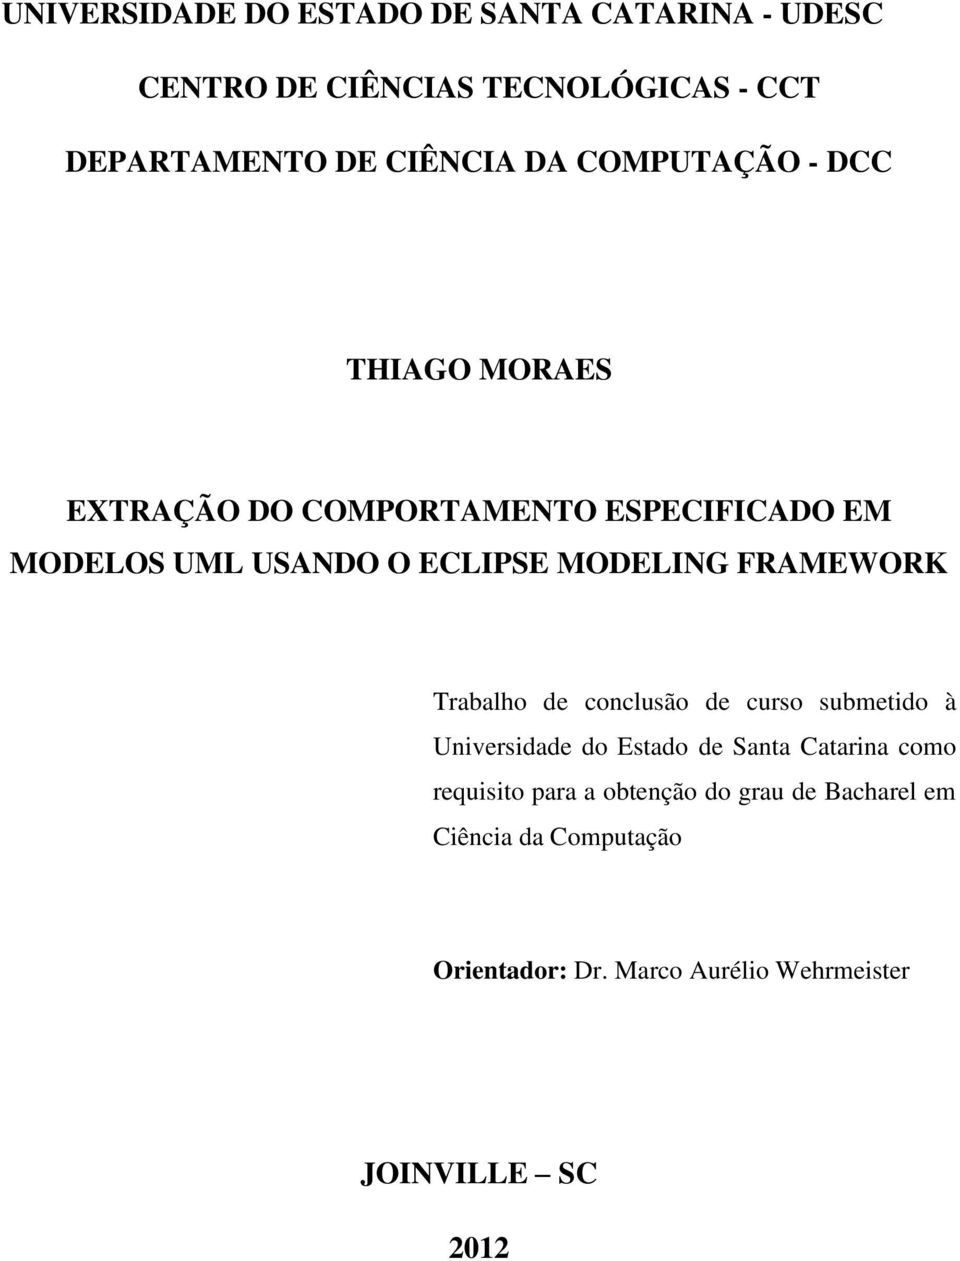 FRAMEWORK Trabalho de conclusão de curso submetido à Universidade do Estado de Santa Catarina como requisito para